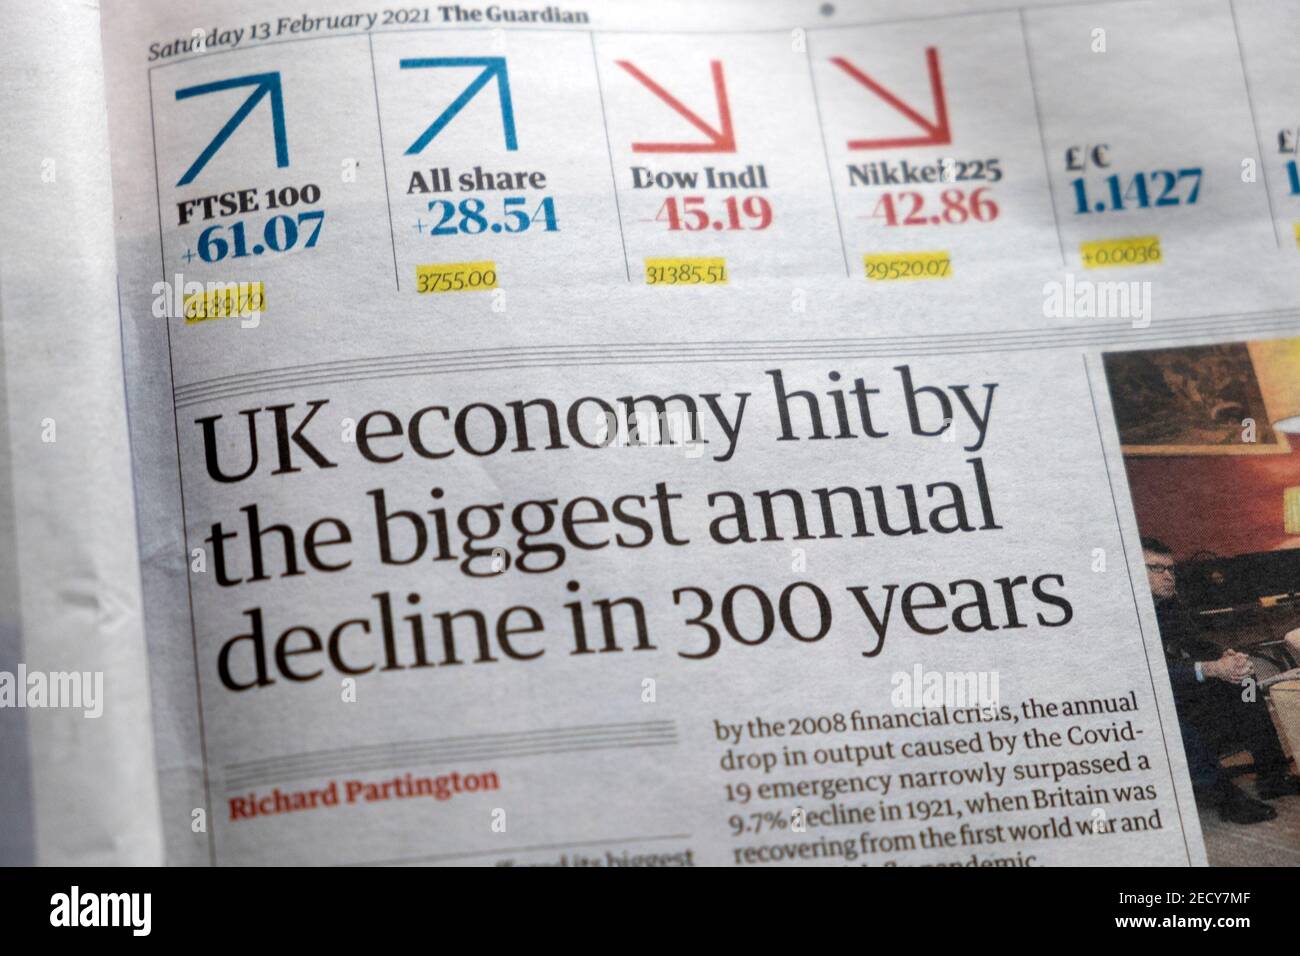 "L'economia del Regno Unito è colpita dal più grande declino annuale del 300 Articolo anni nella sezione finanziaria del giornale Guardian di Londra Inghilterra Regno Unito 13 febbraio 2021 Foto Stock